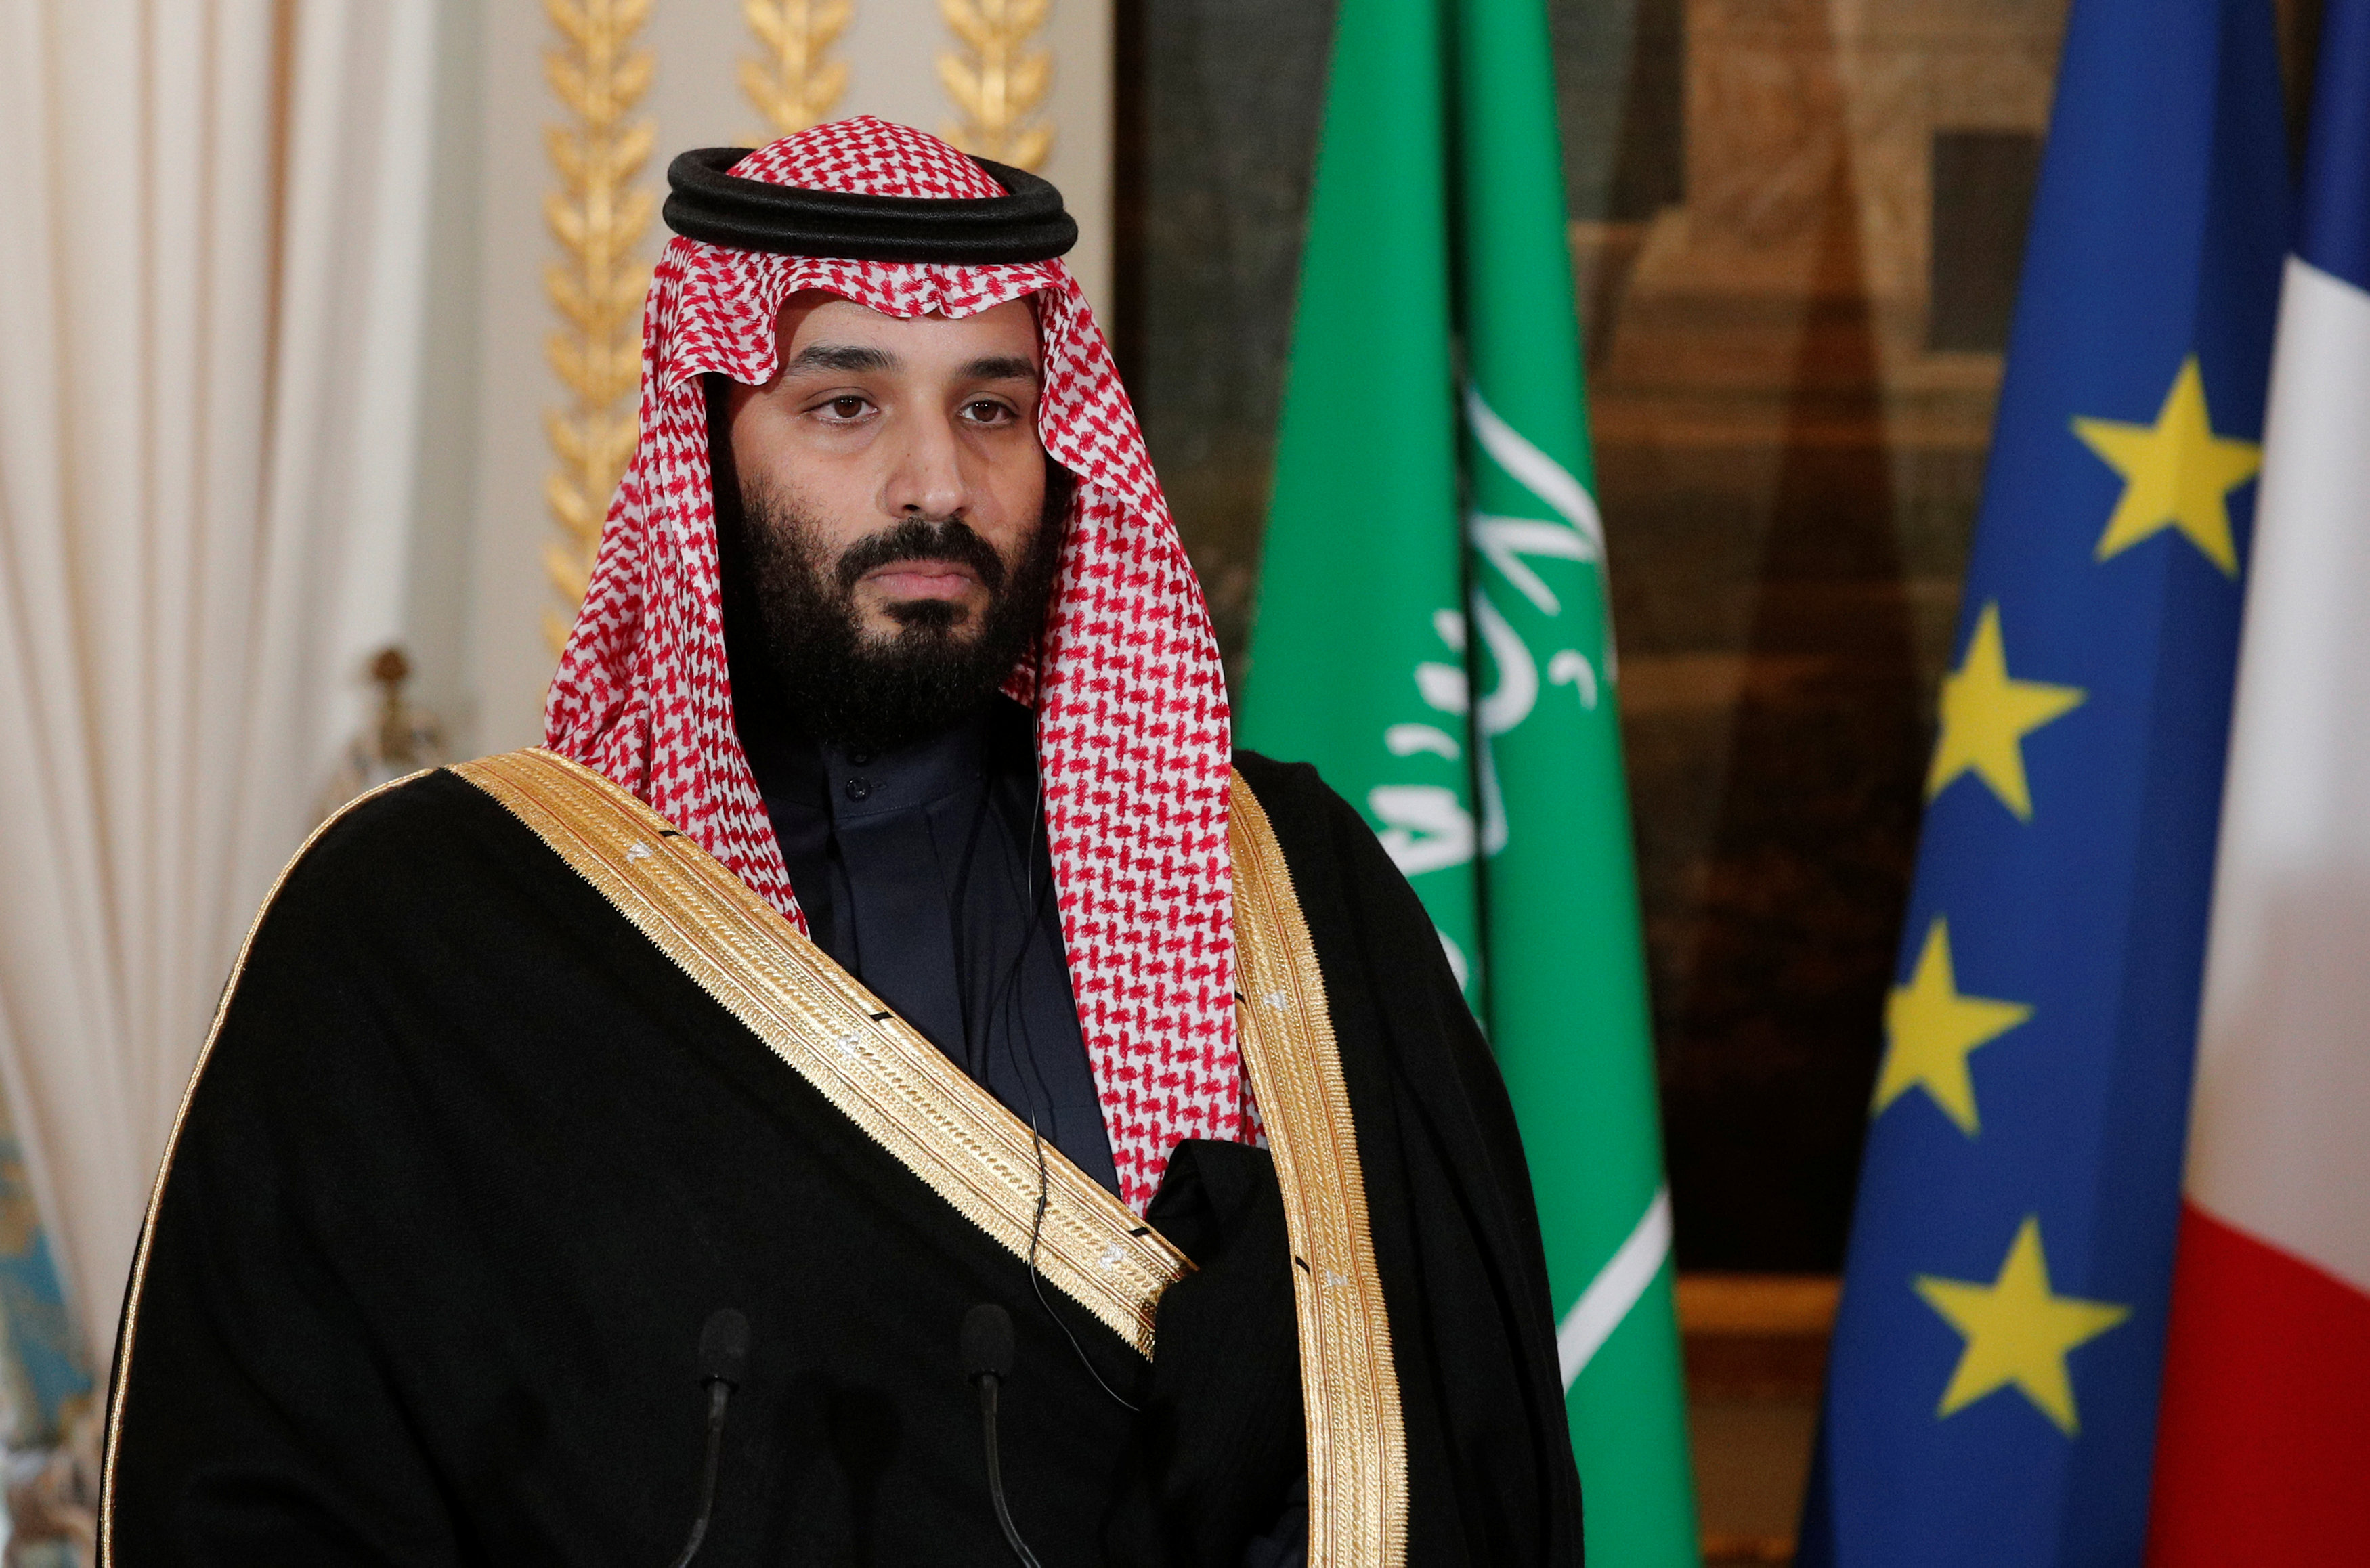 El rey de Arabia Saudita denuncia injerencias flagrantes de Irán en asuntos árabes